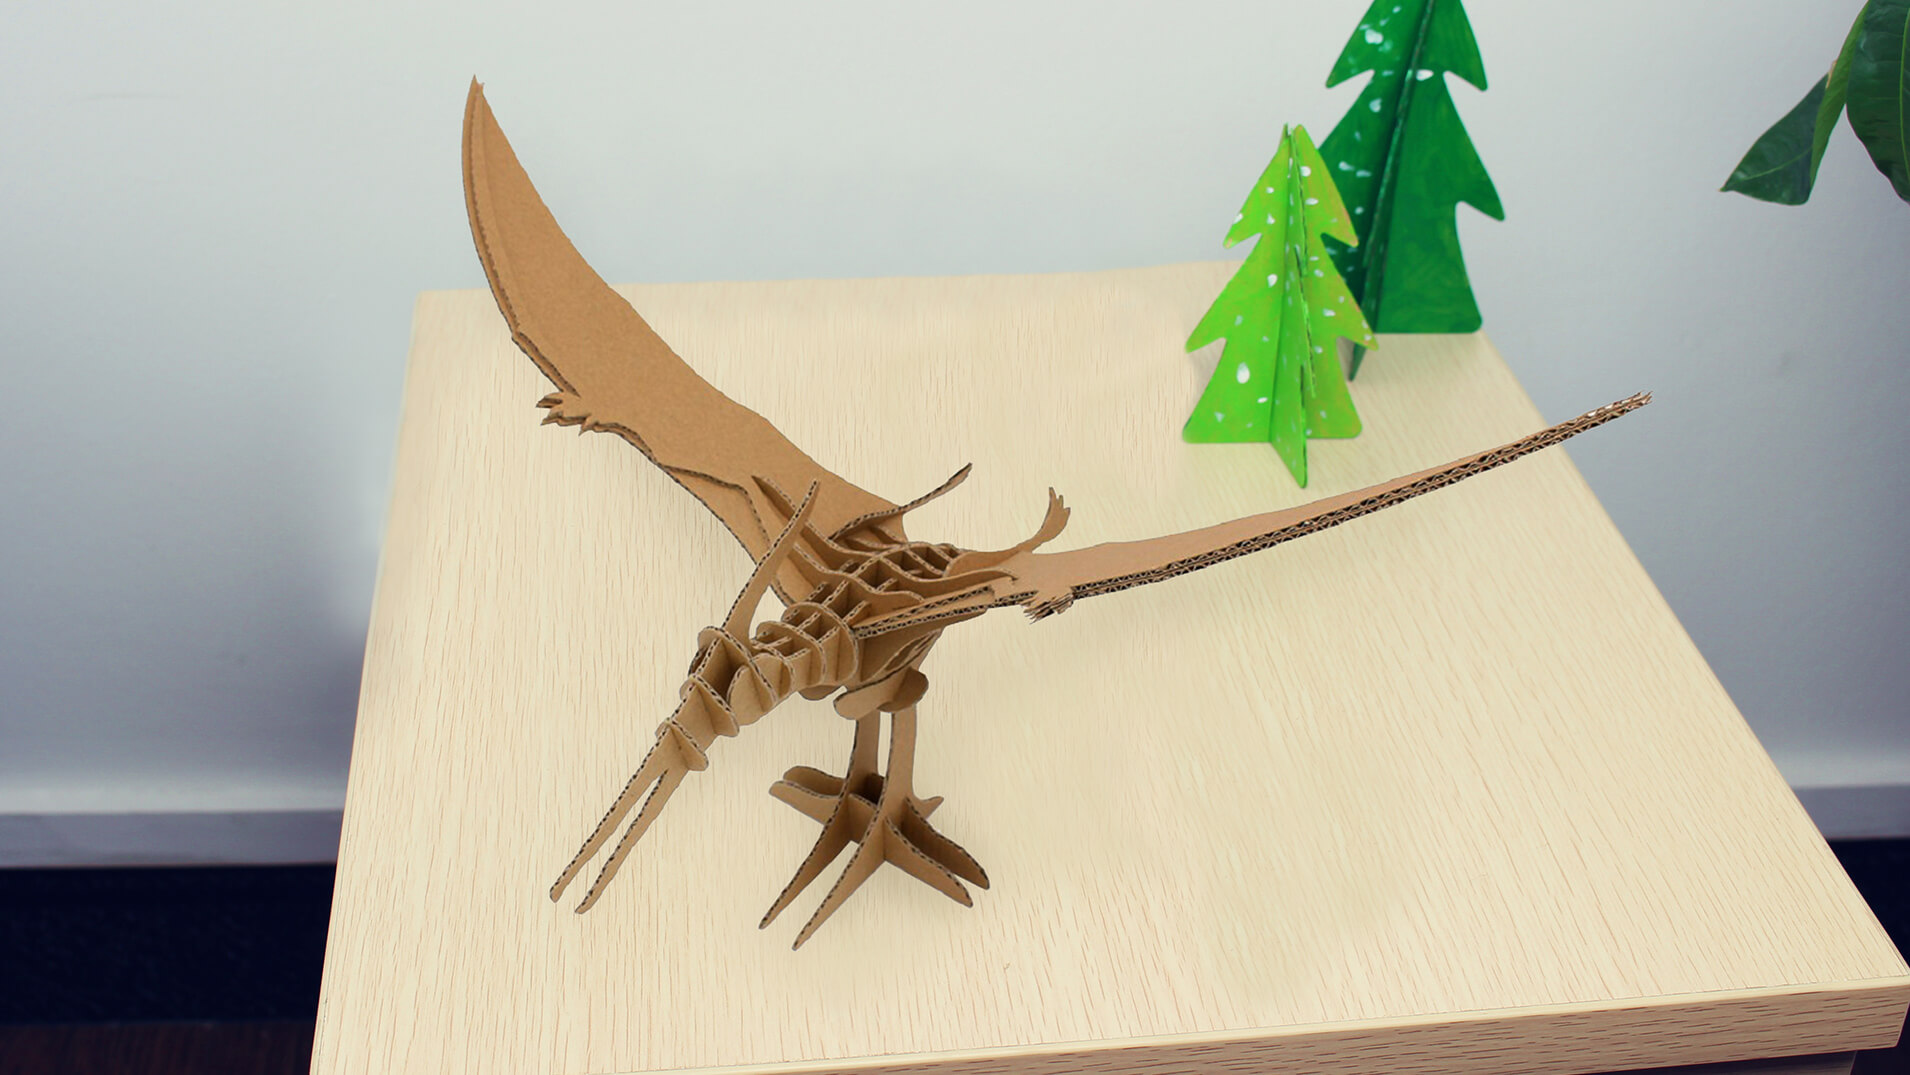 Ev Masaüstü Dekorasyon CS172 için Pterosaur 3D Puzzle Kağıt Modeli (1)